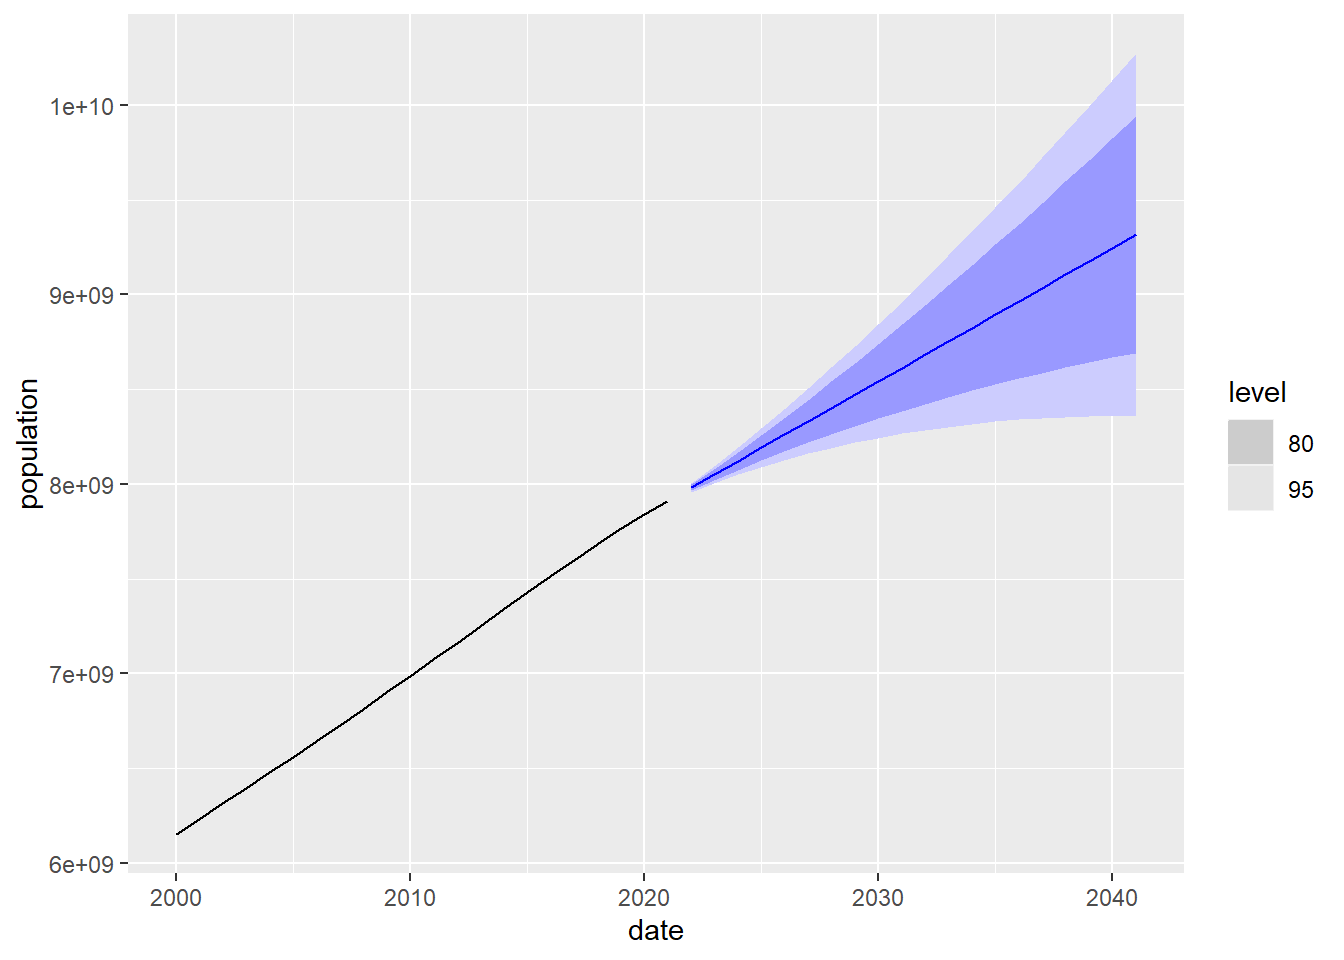 Predicción a 20 años de la población mundial usando el modelo de suavizado exponencial